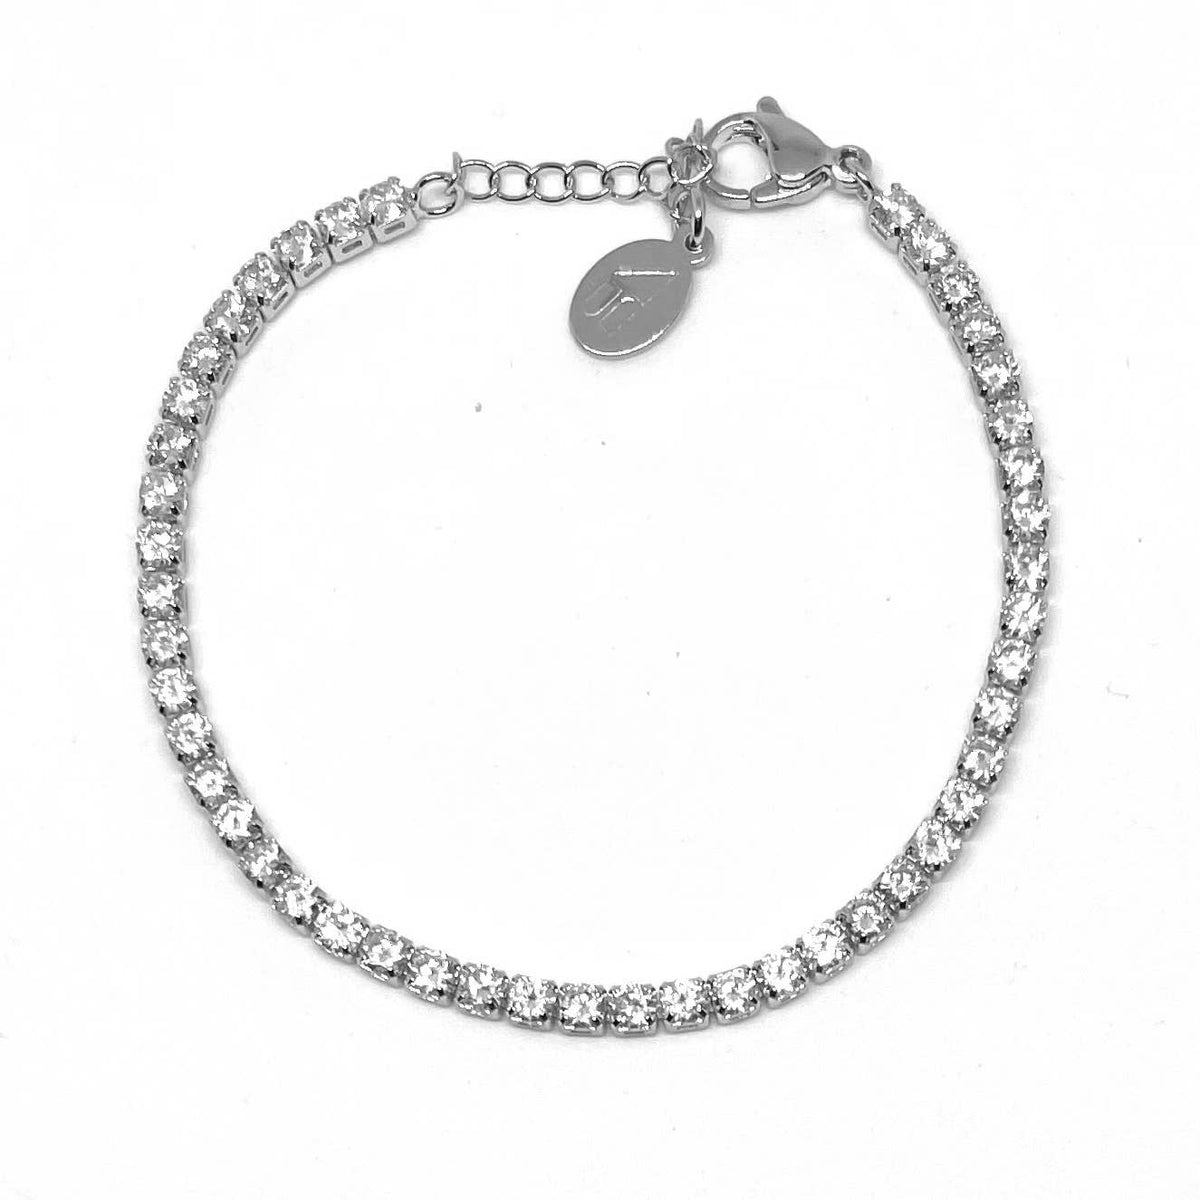 adjustable silver bracelet with gems, silver dainty bracelet, basic silver bracelet